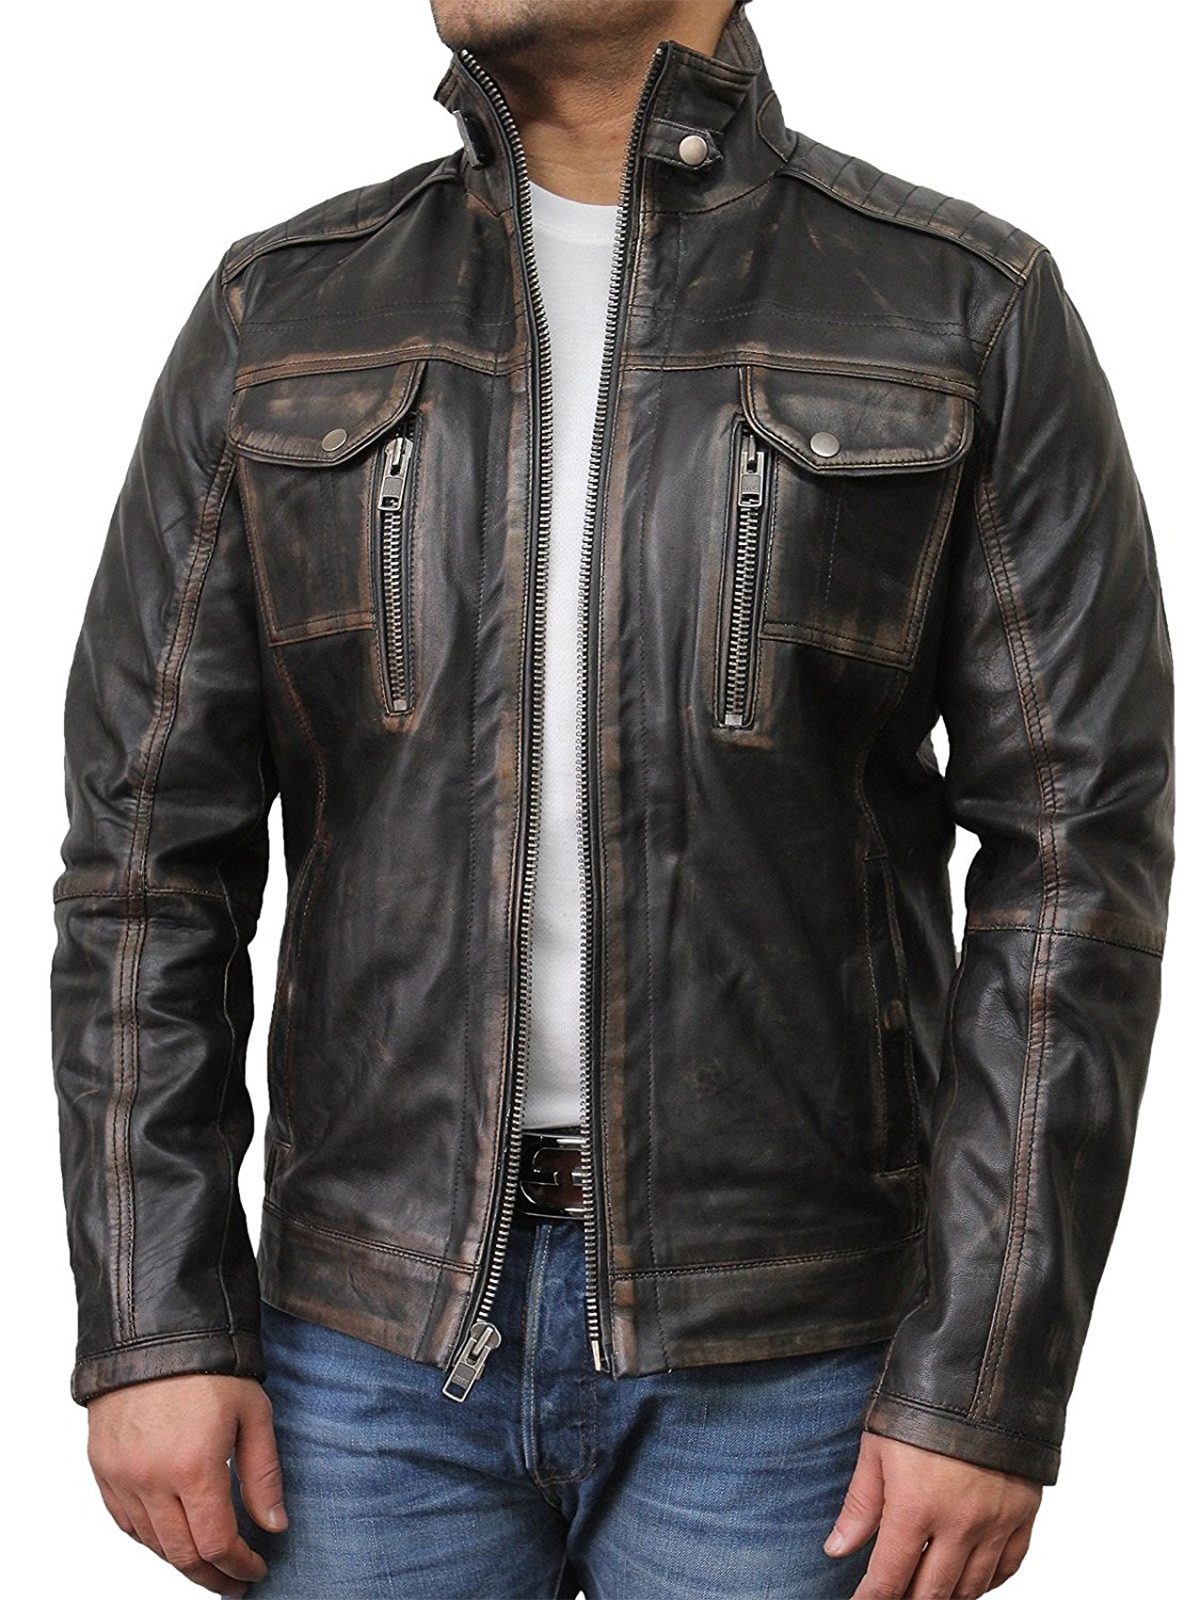 Байкерская кожаная мужская. 2020 Vintage Black Biker's Style Genuine Leather Jacket men. Кожаная куртка мужская Brando. Байкерская куртка est 35 Redwood Aviation Team real Leather. Spesh куртка кожаная мужская.